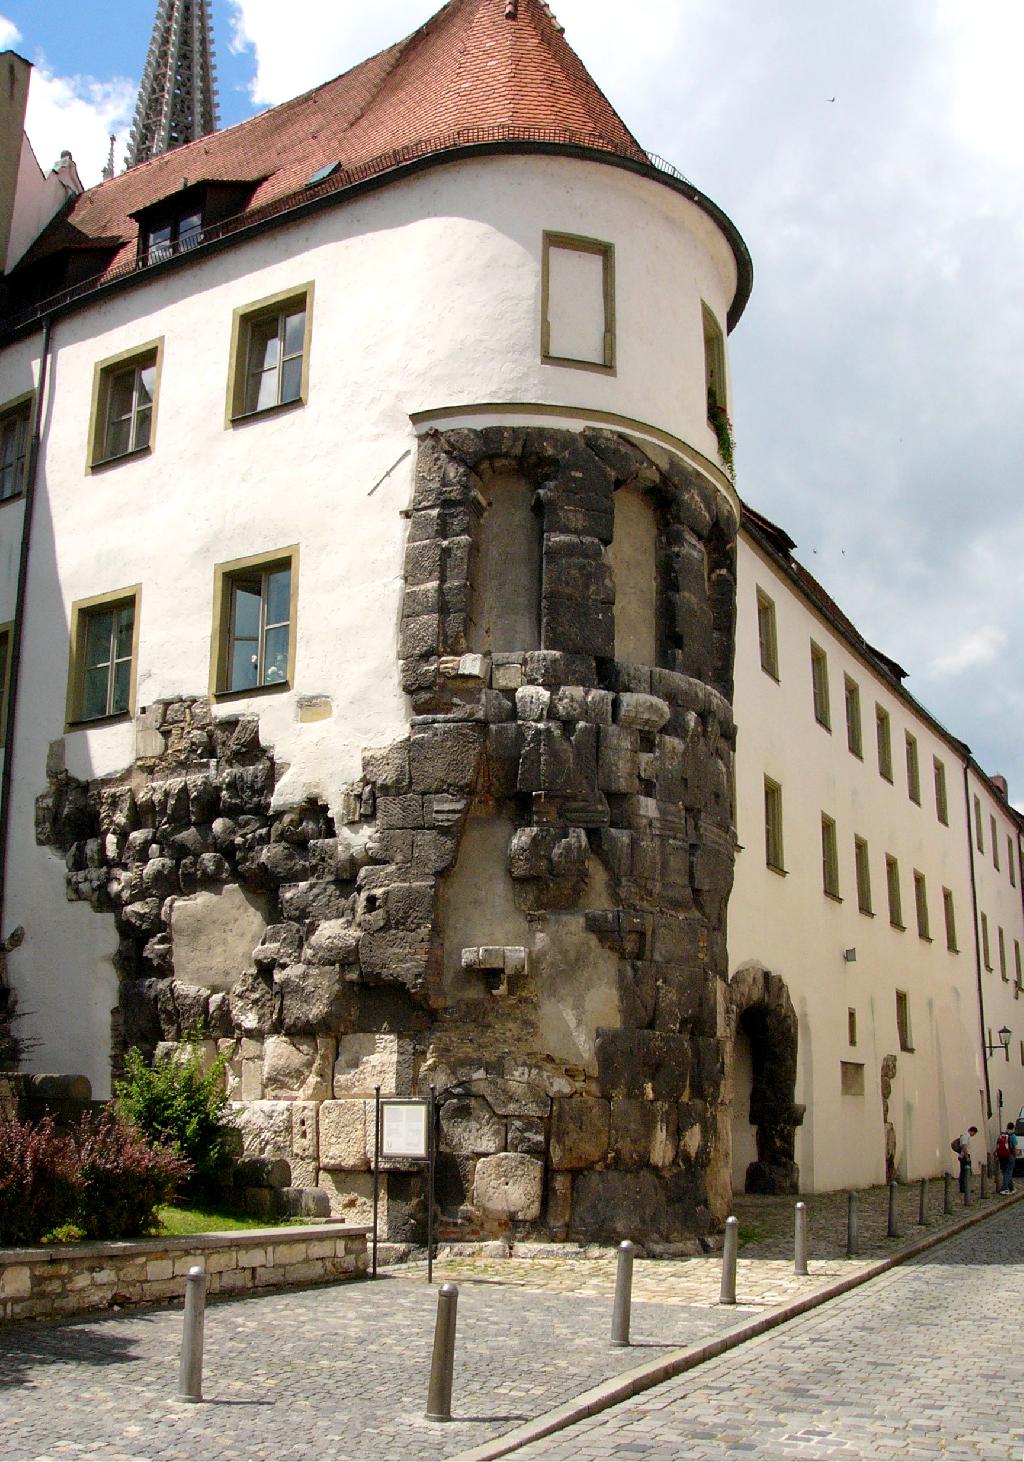 Porta praetoria in Regensburg